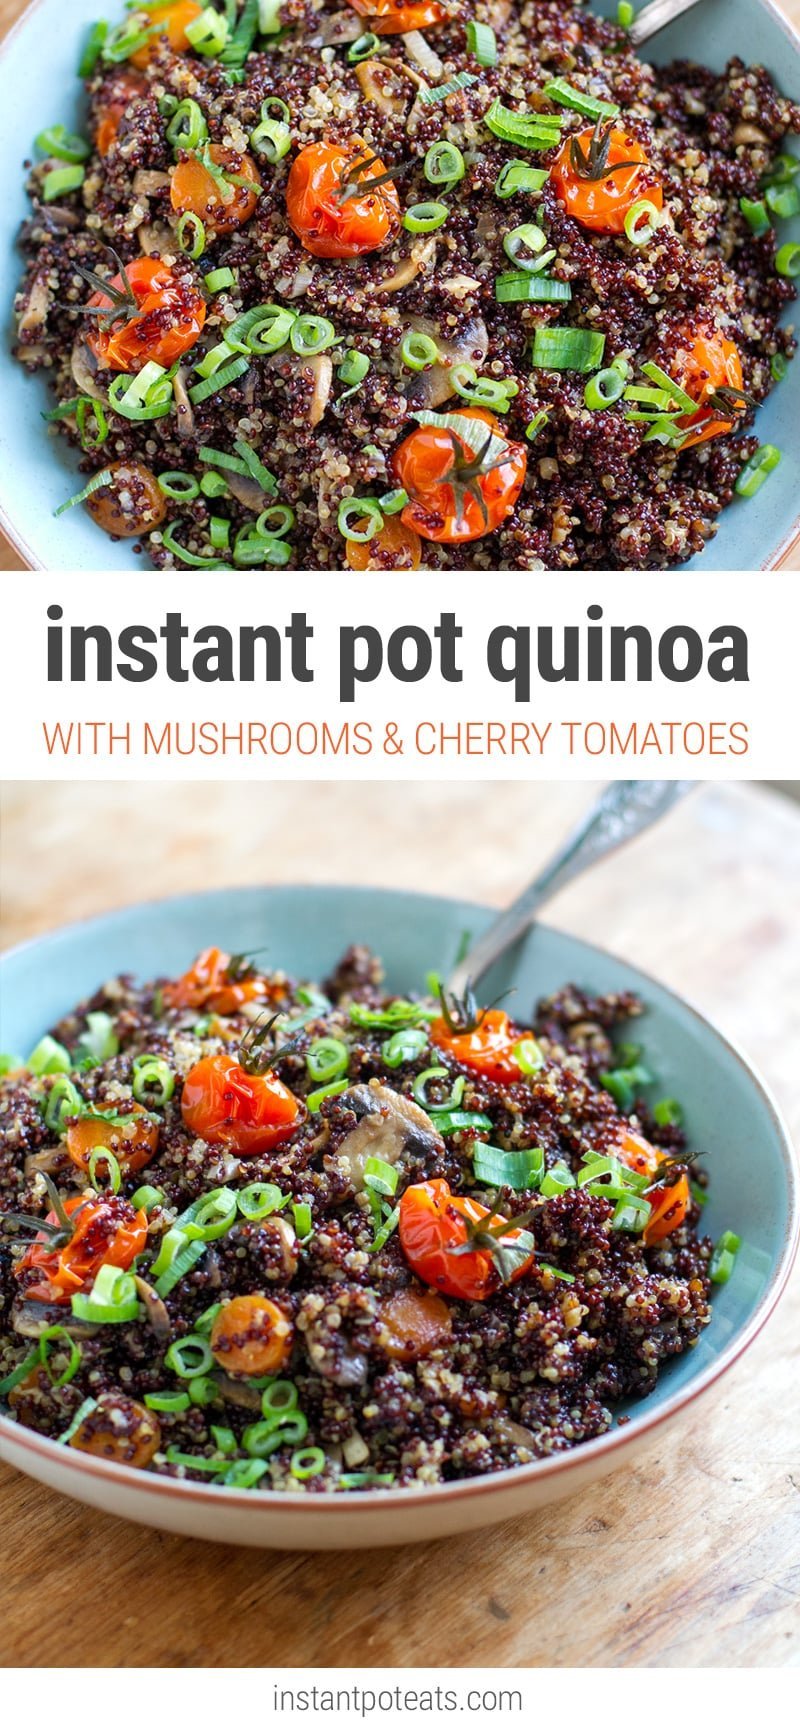 Instant Pot Quinoa With Garlic Mushrooms & Cherry Tomatoes (Vegan, Vegetarian, Gluten-free, Dairy-free)